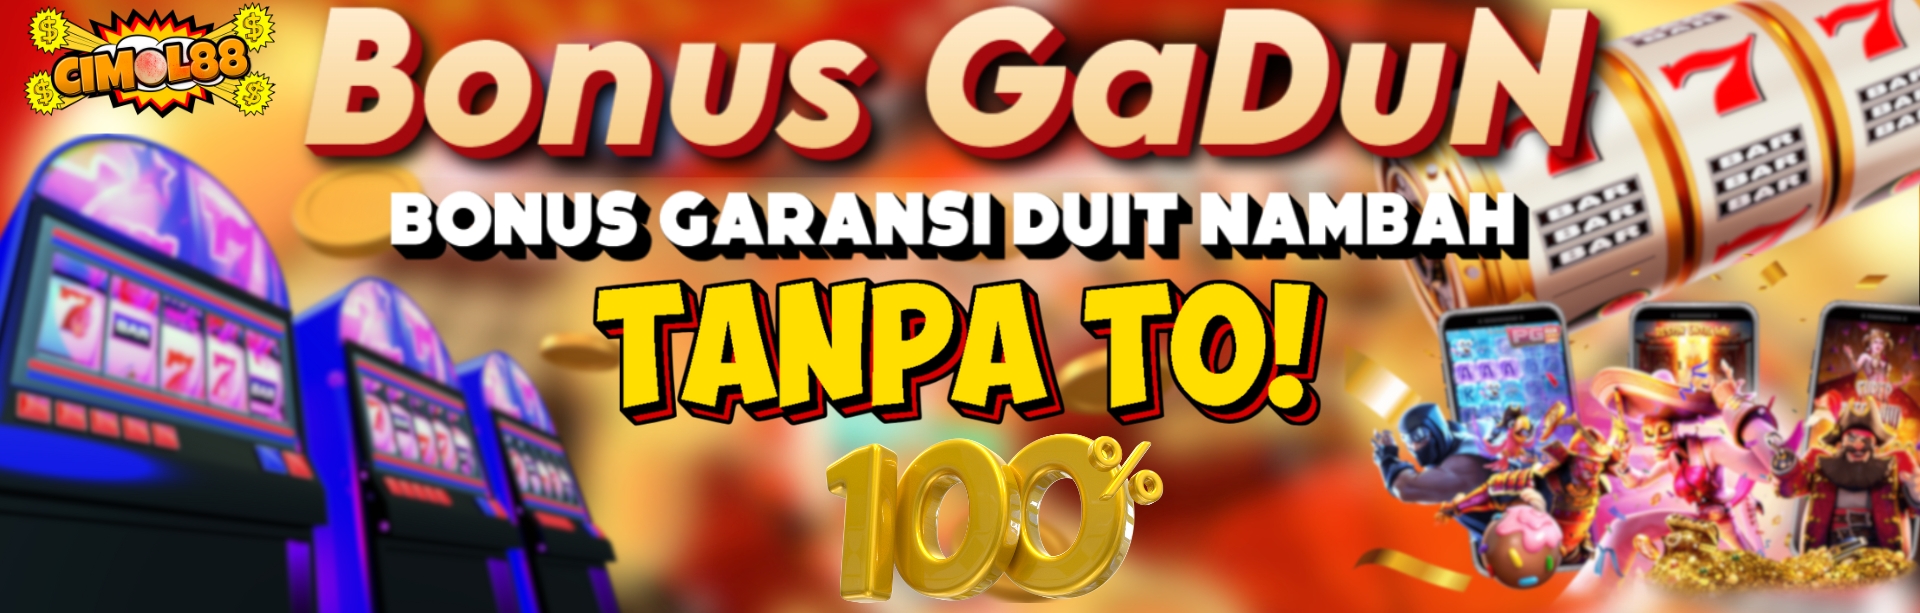 BONUS GARANSI DUIT NAMBAH 100% TANPA TO..!!